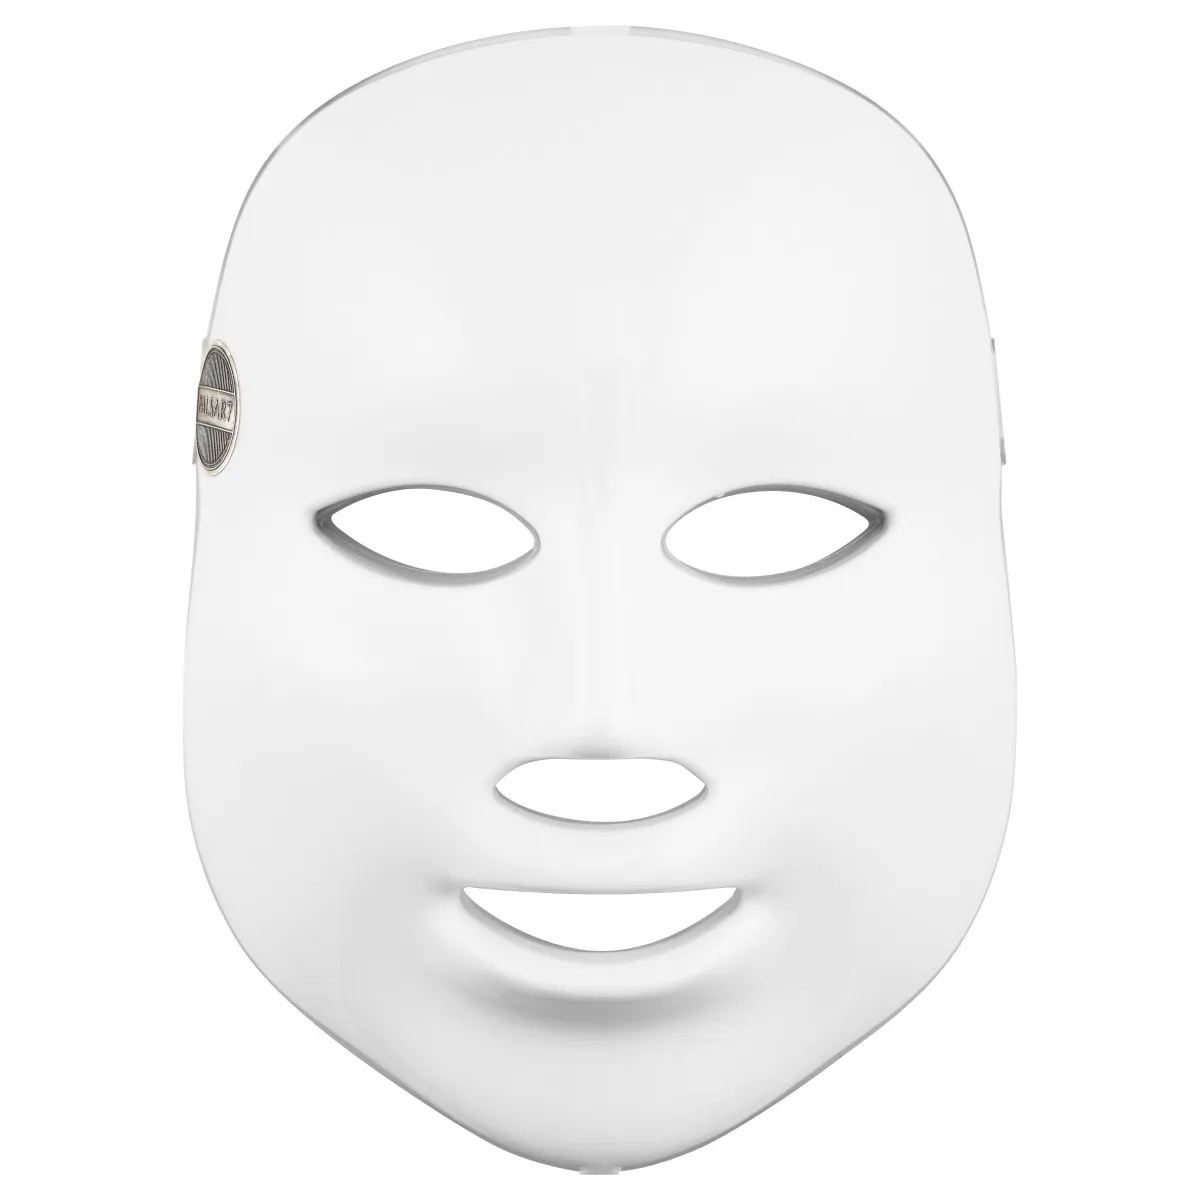 Palsar7 Ošetrujúca LED maska na tvár (biela) 1×1 ks, LED maska na tvár